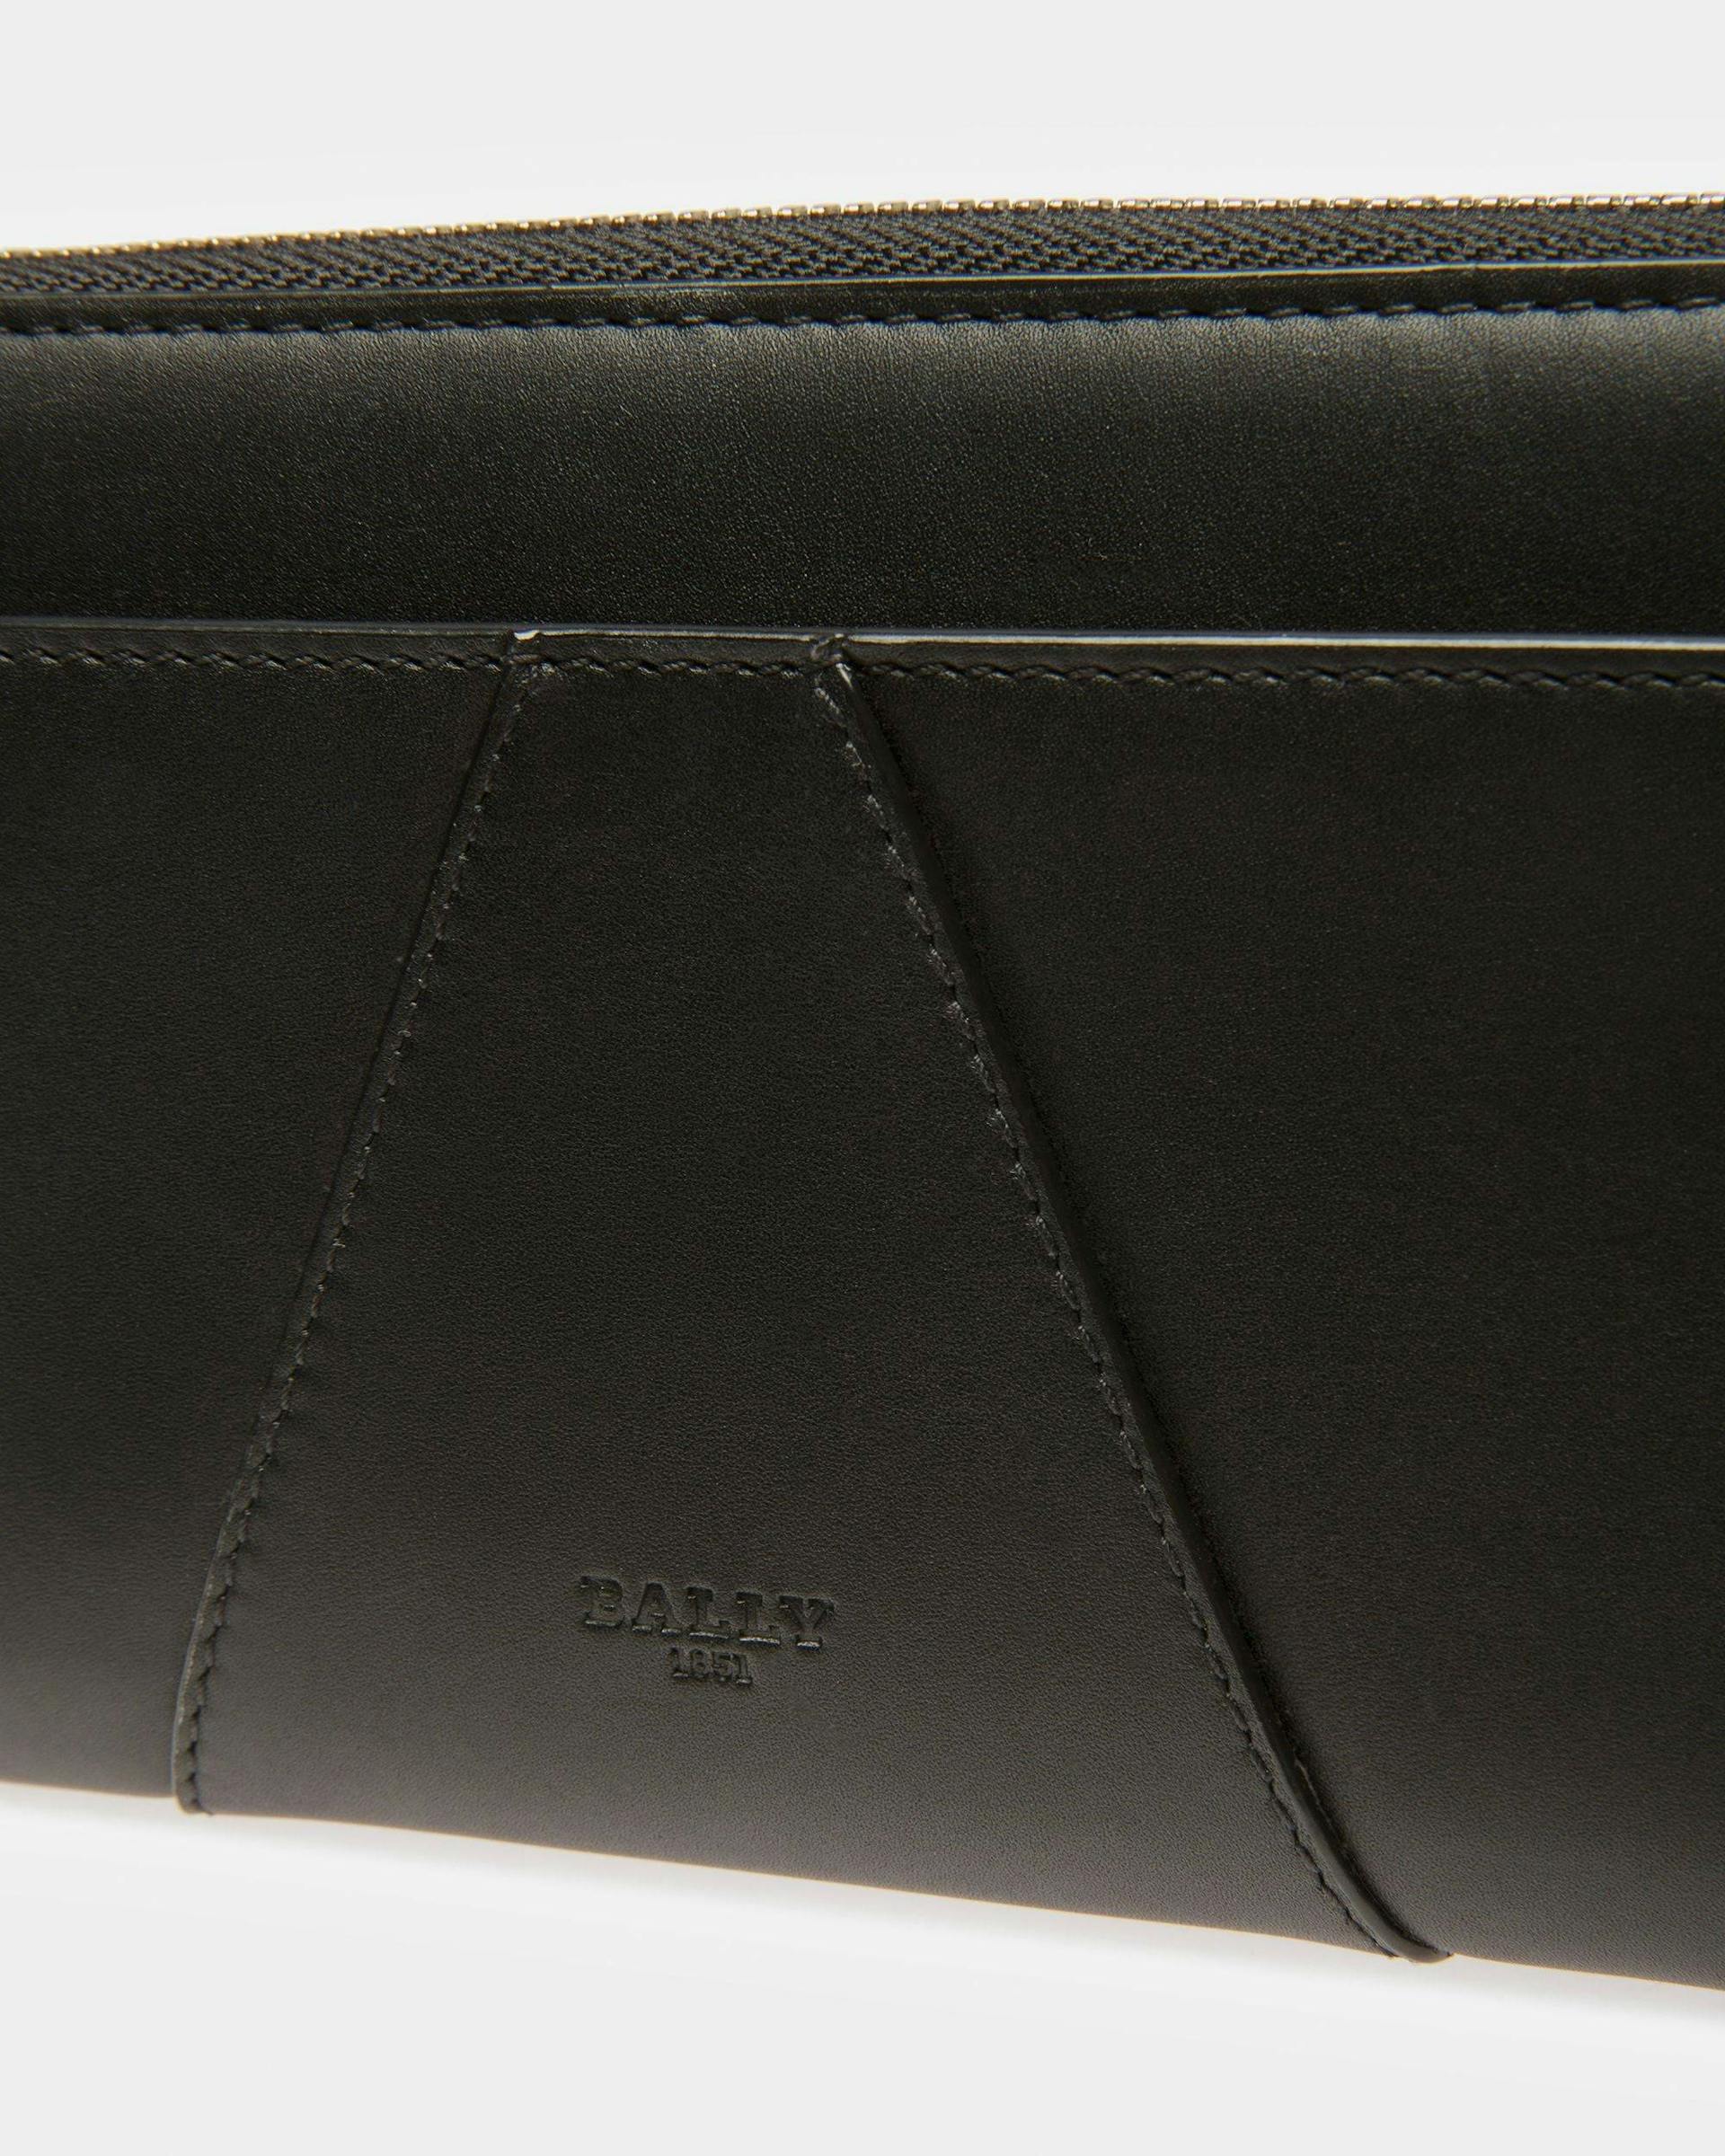 Avenor Leather Wallet In Black - Women's - Bally - 04